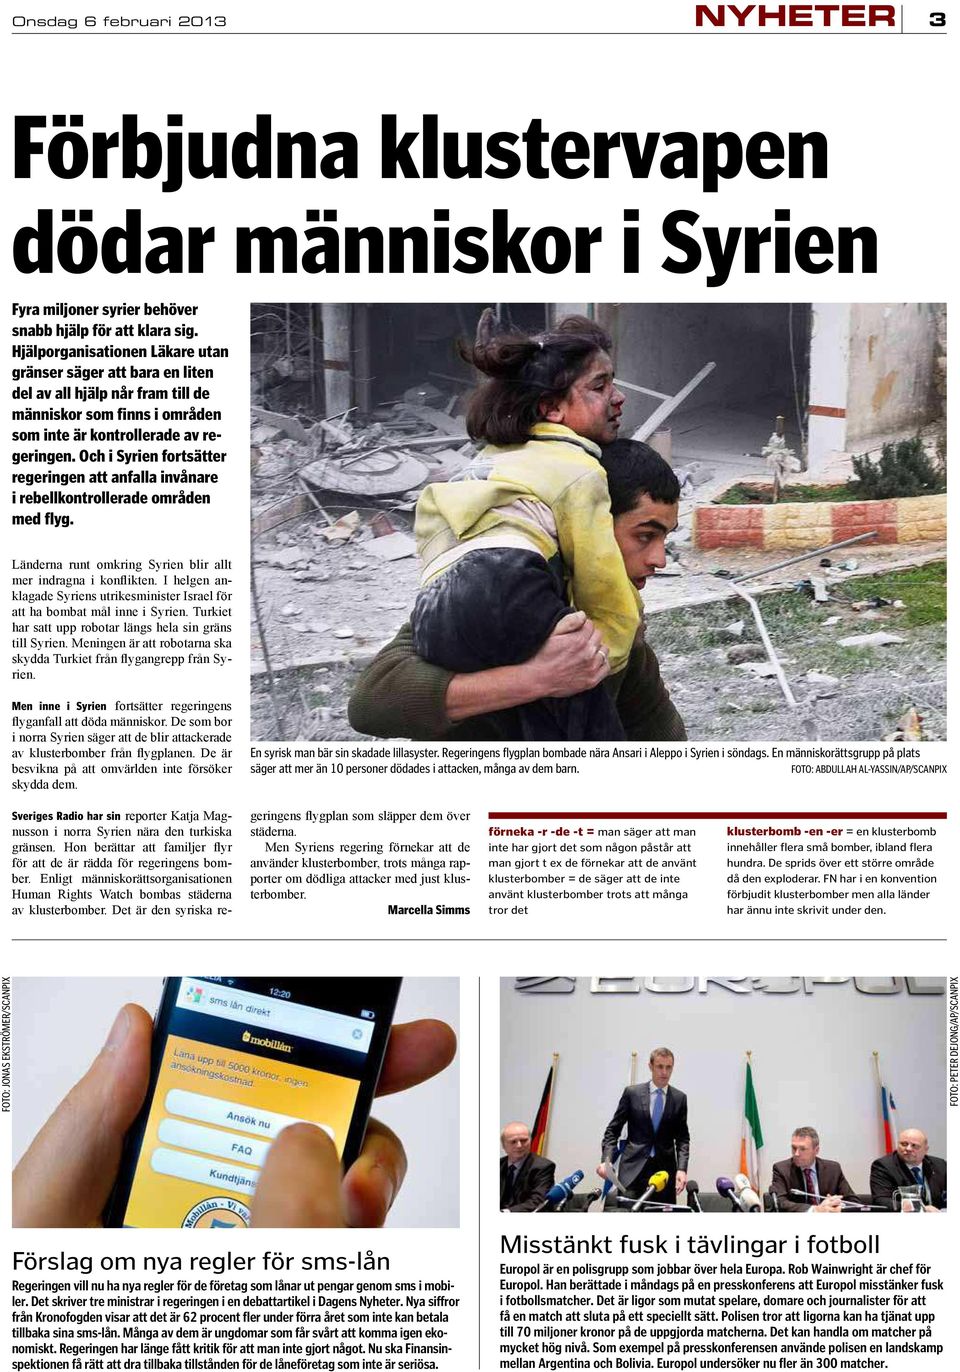 Och i Syrien fortsätter regeringen att anfalla invånare i rebellkontrollerade områden med flyg. Men inne i Syrien En syrisk man bär sin skadade lillasyster.